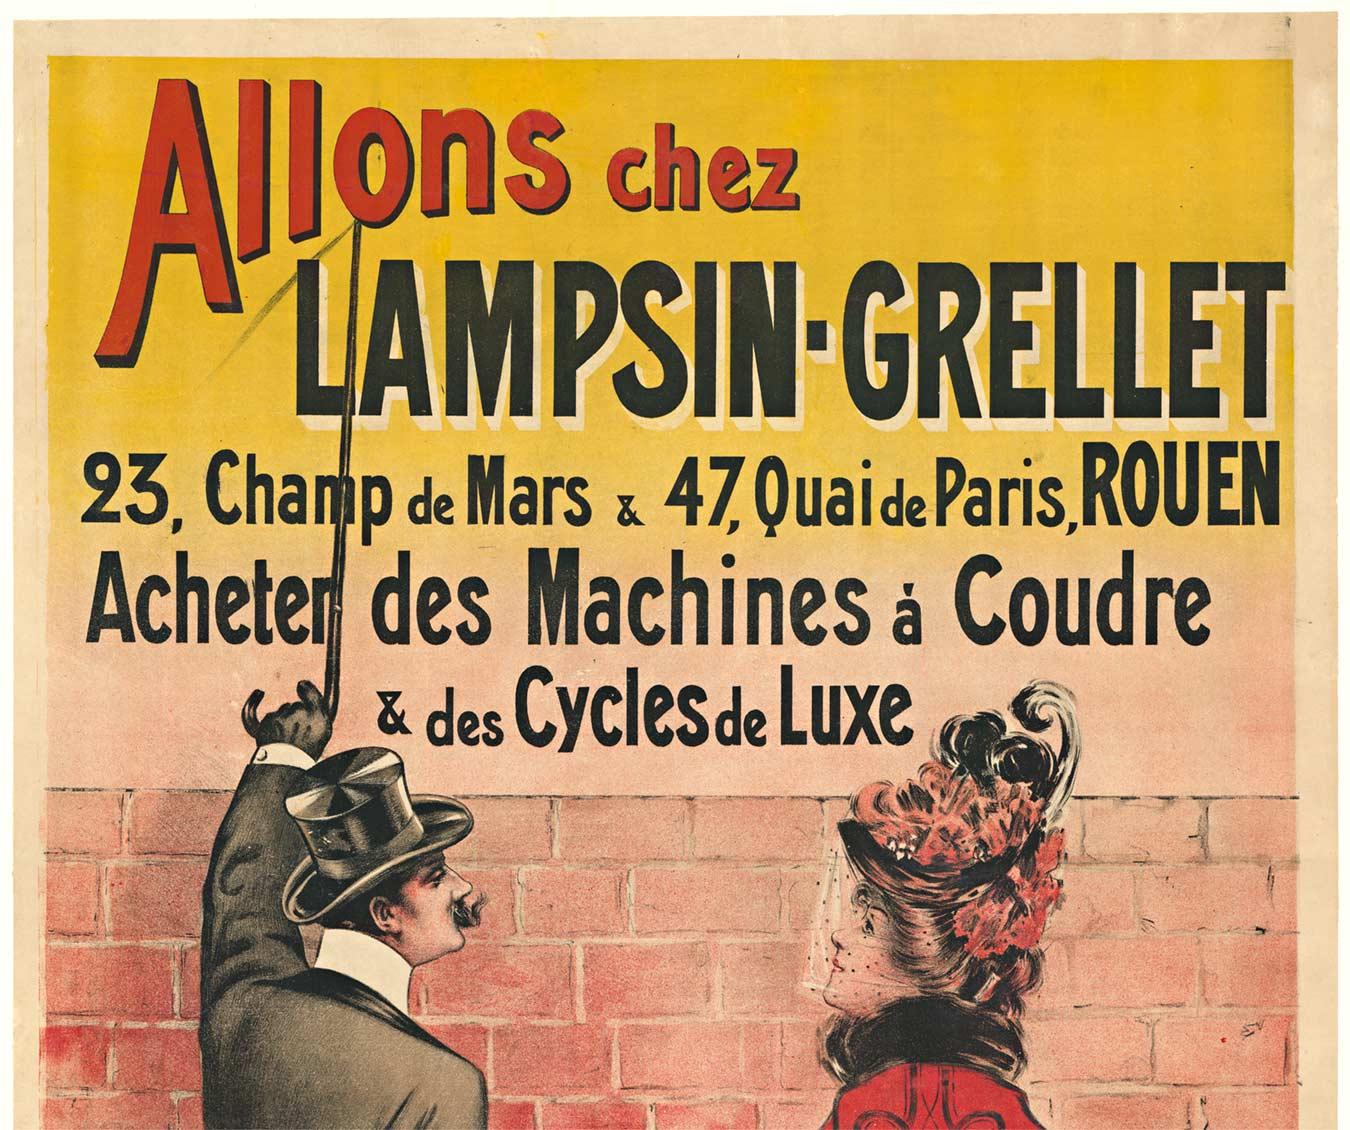 Original Lampsin - Grellet vintage art nouveau poster - Print by Charles Tichon